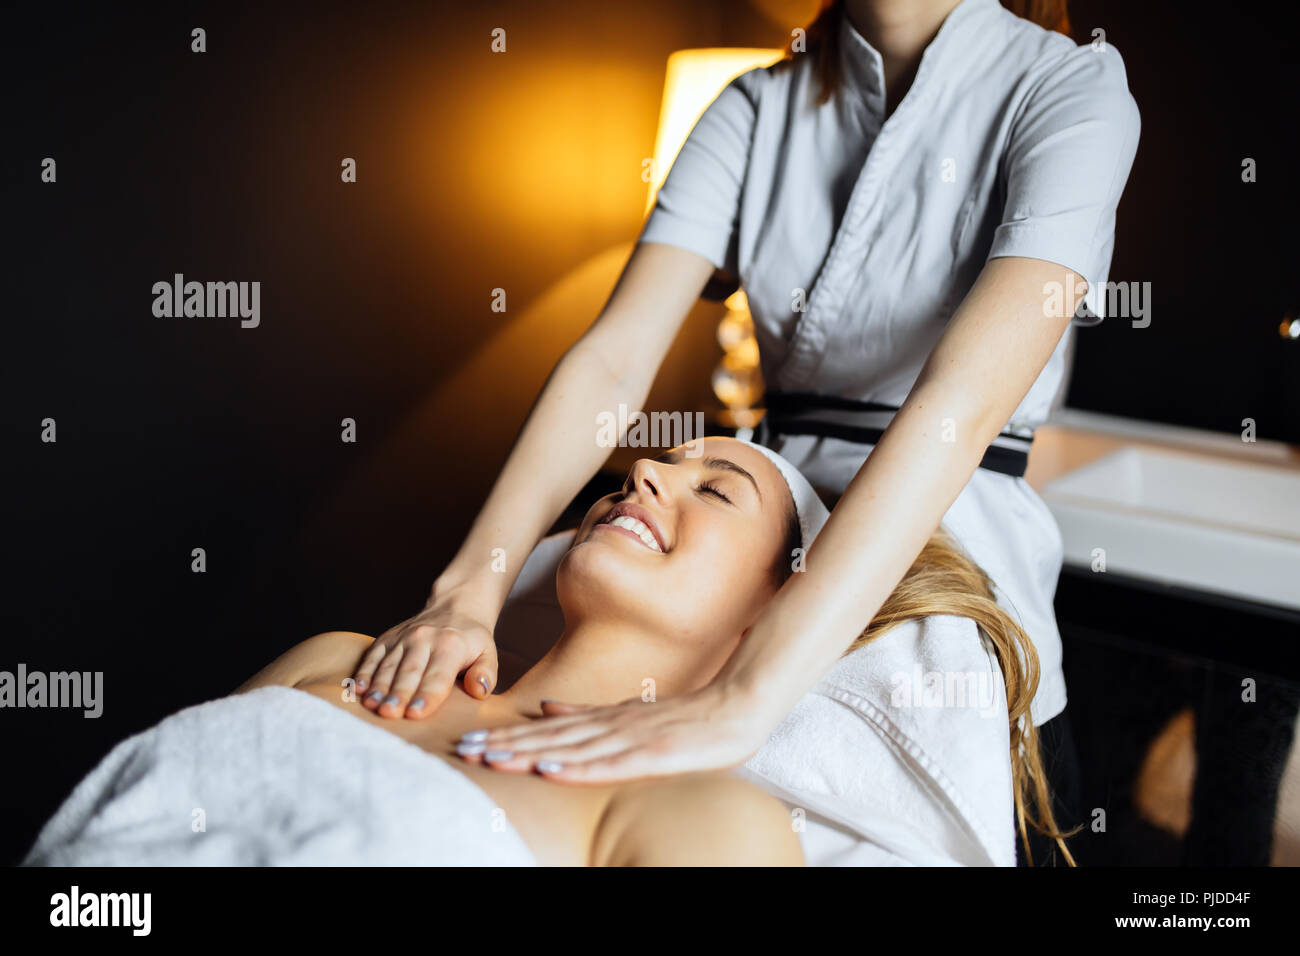 Beautiful woman enjoying massage treatment Stock Photo